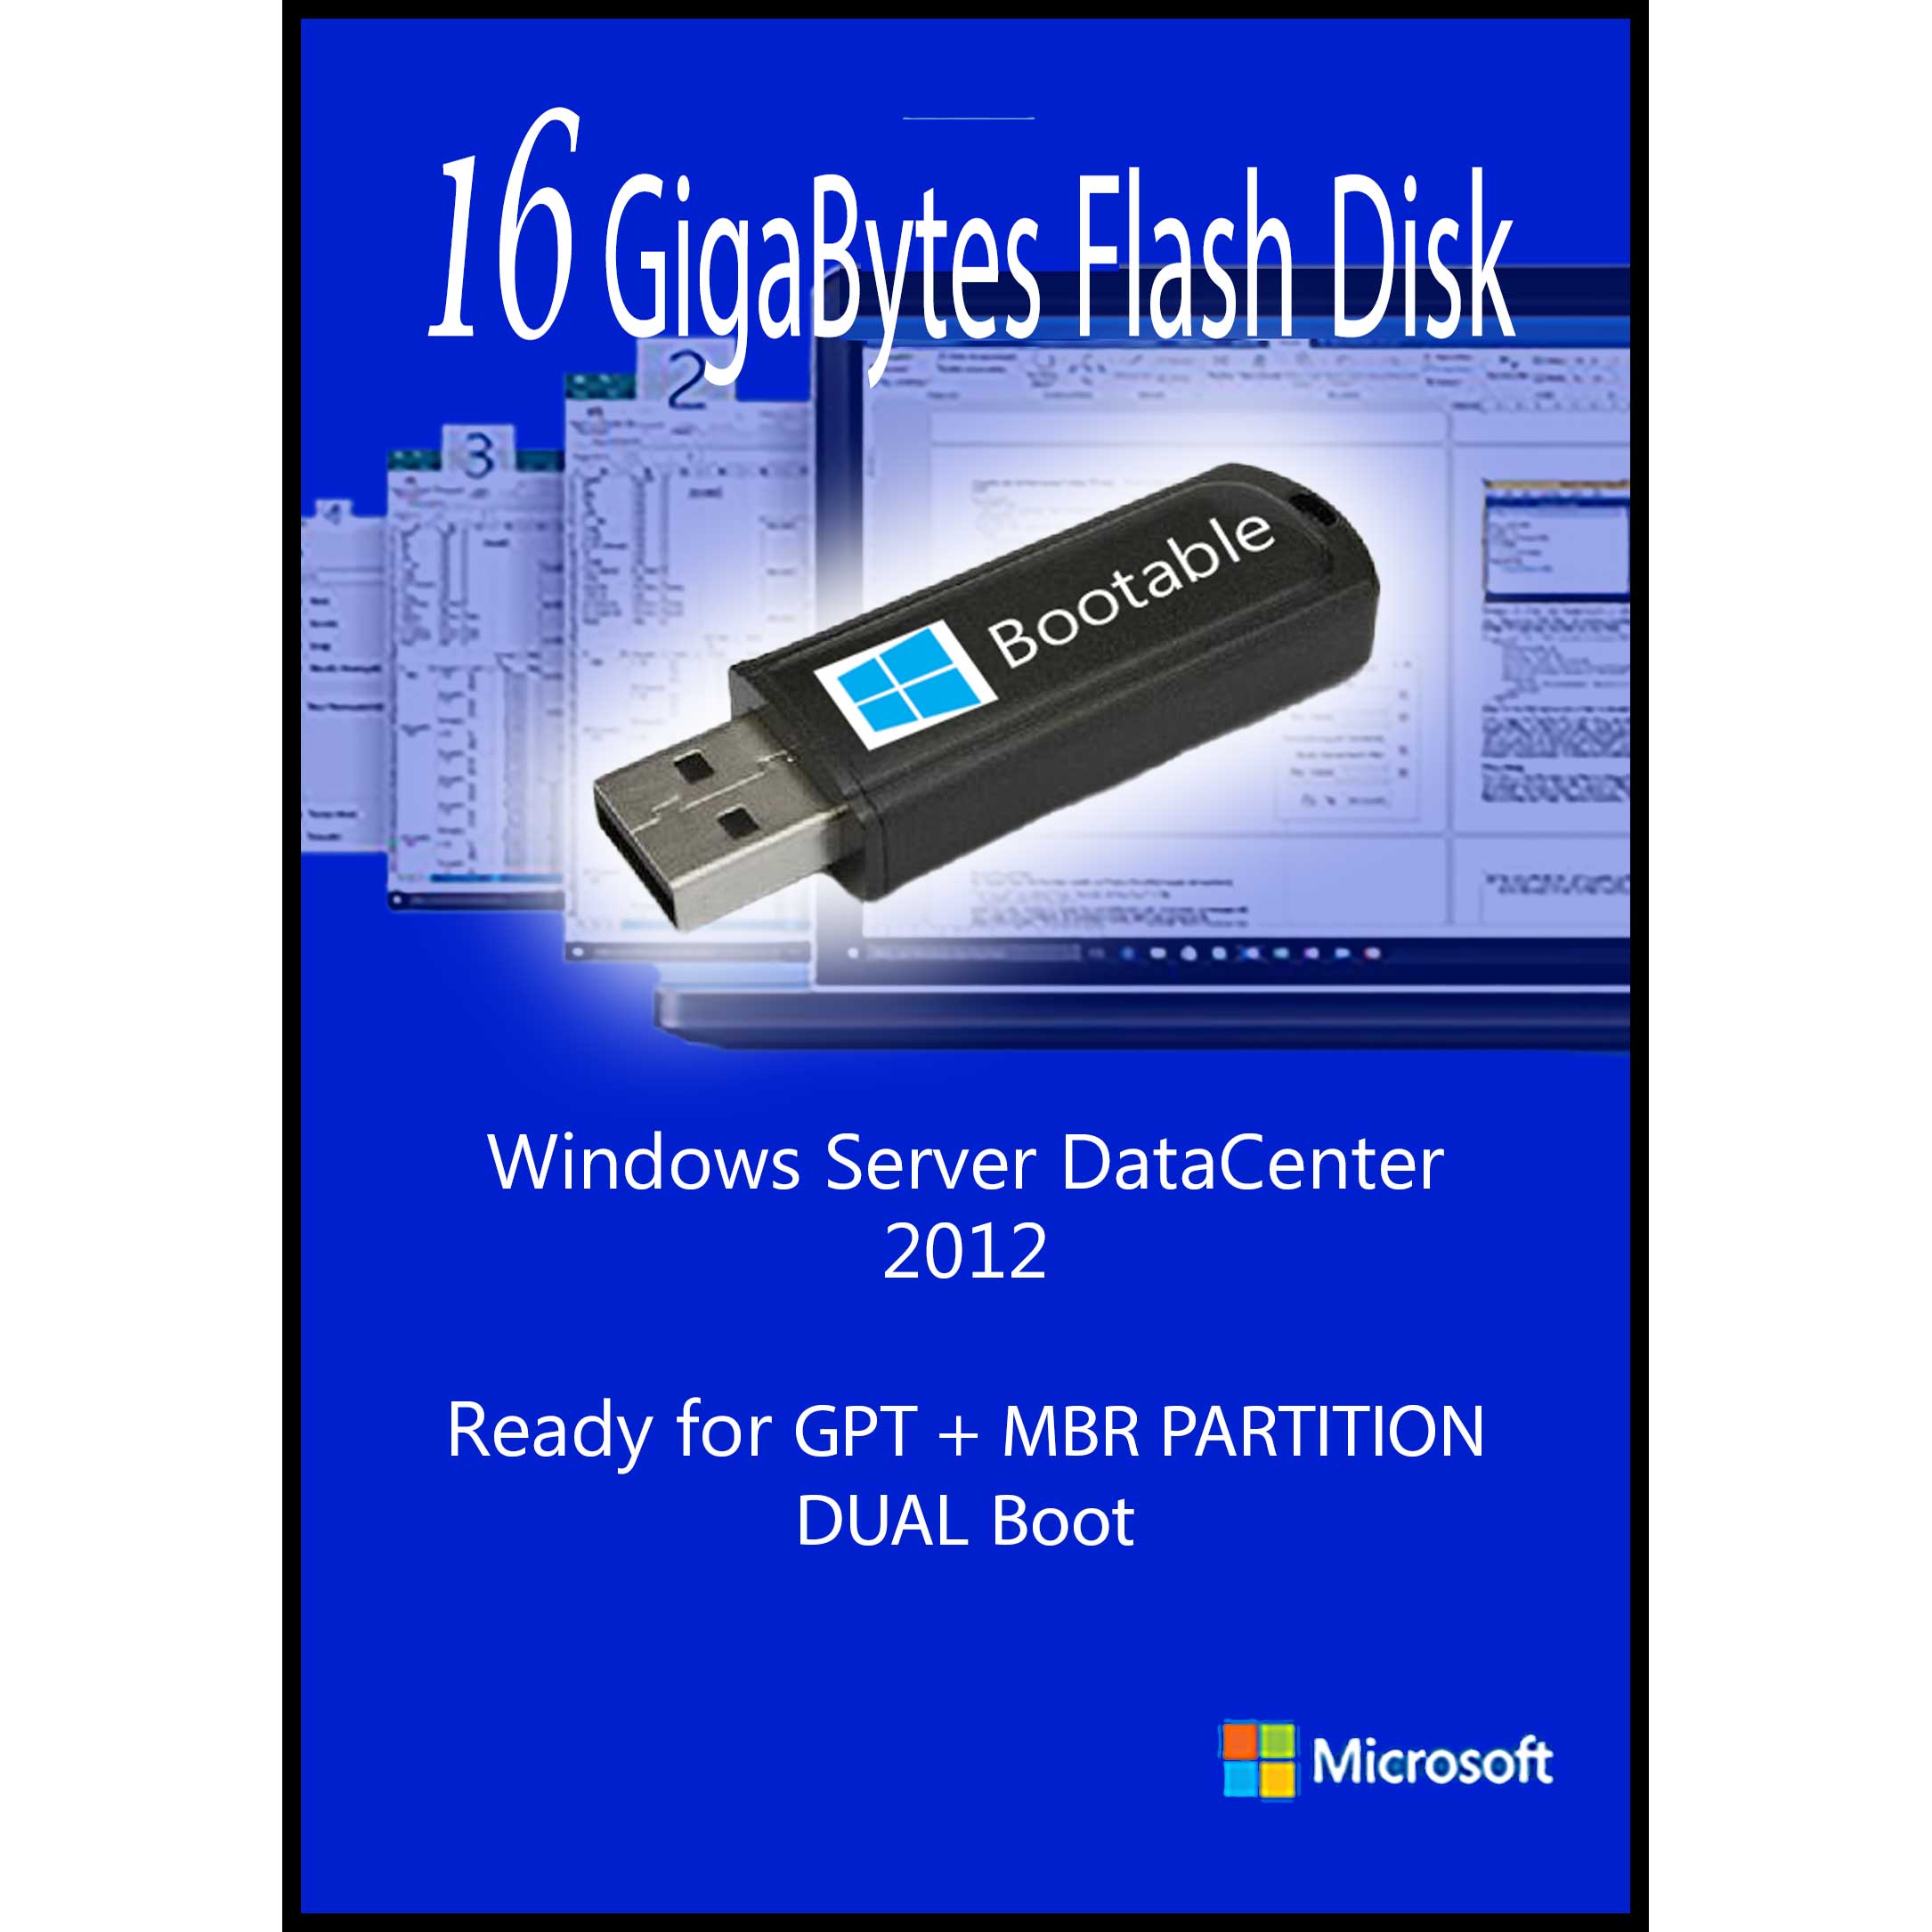 سیستم عامل Windows Server DataCenter 2012 نشر مایکروسافت